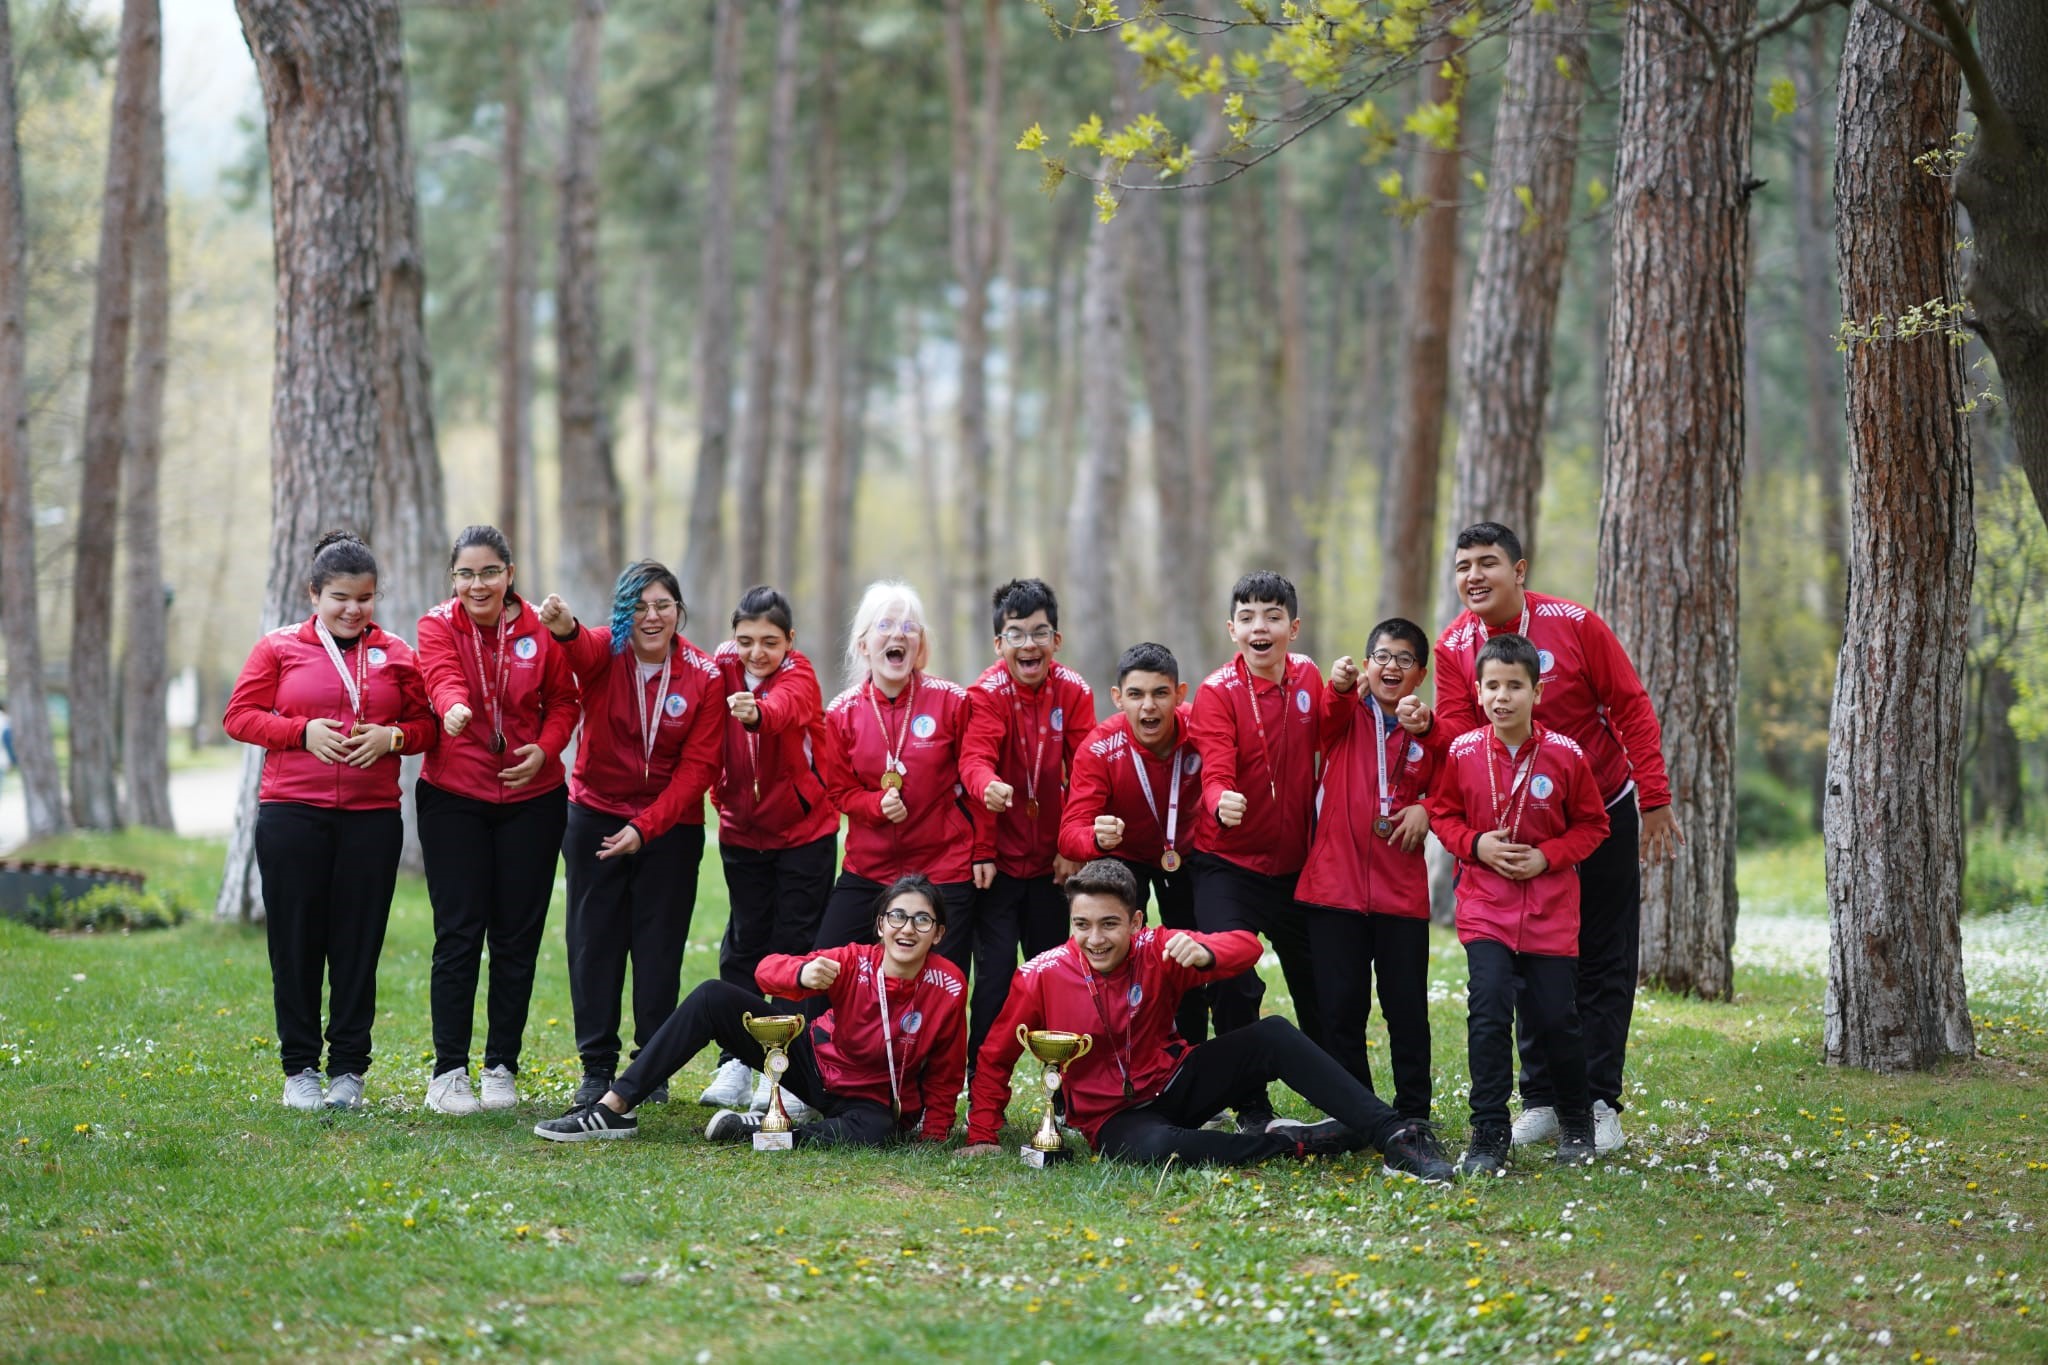 Görme Engelli Okullar arası Yıldızlar Goalball Türkiye Şampiyonası’ndan altın madalyayla dönen Denizli Görme Engelliler Ortaokulu Kız ve Erkek Goalball takımları, hedeflerini milli takım olarak belirledi.